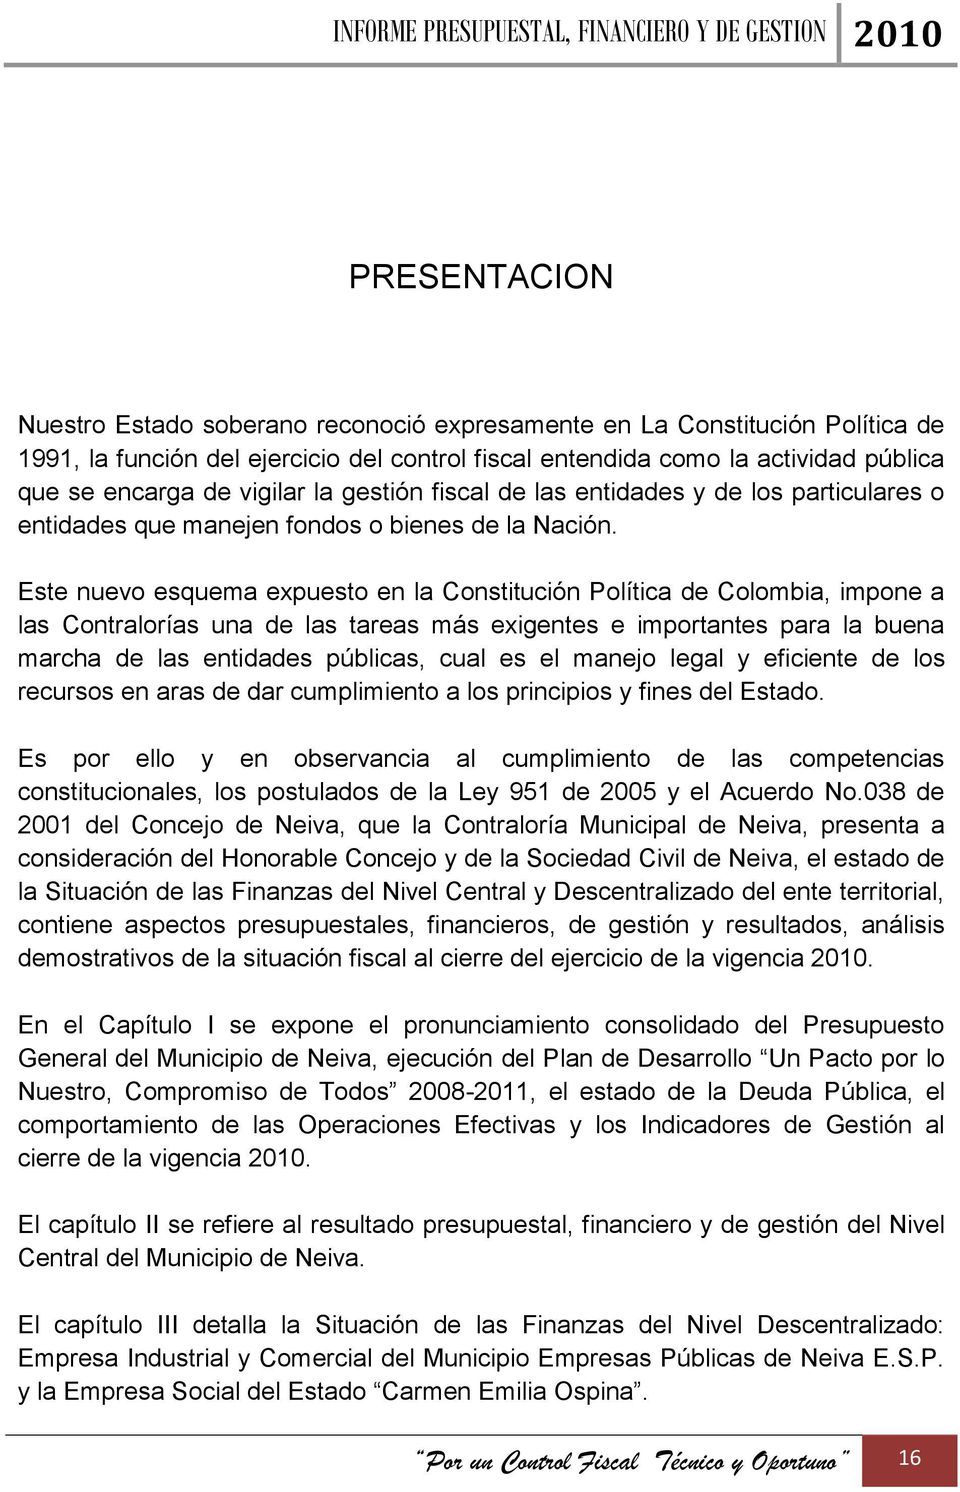 Este nuevo esquema expuesto en la Constitución Política de Colombia, impone a las Contralorías una de las tareas más exigentes e importantes para la buena marcha de las entidades públicas, cual es el